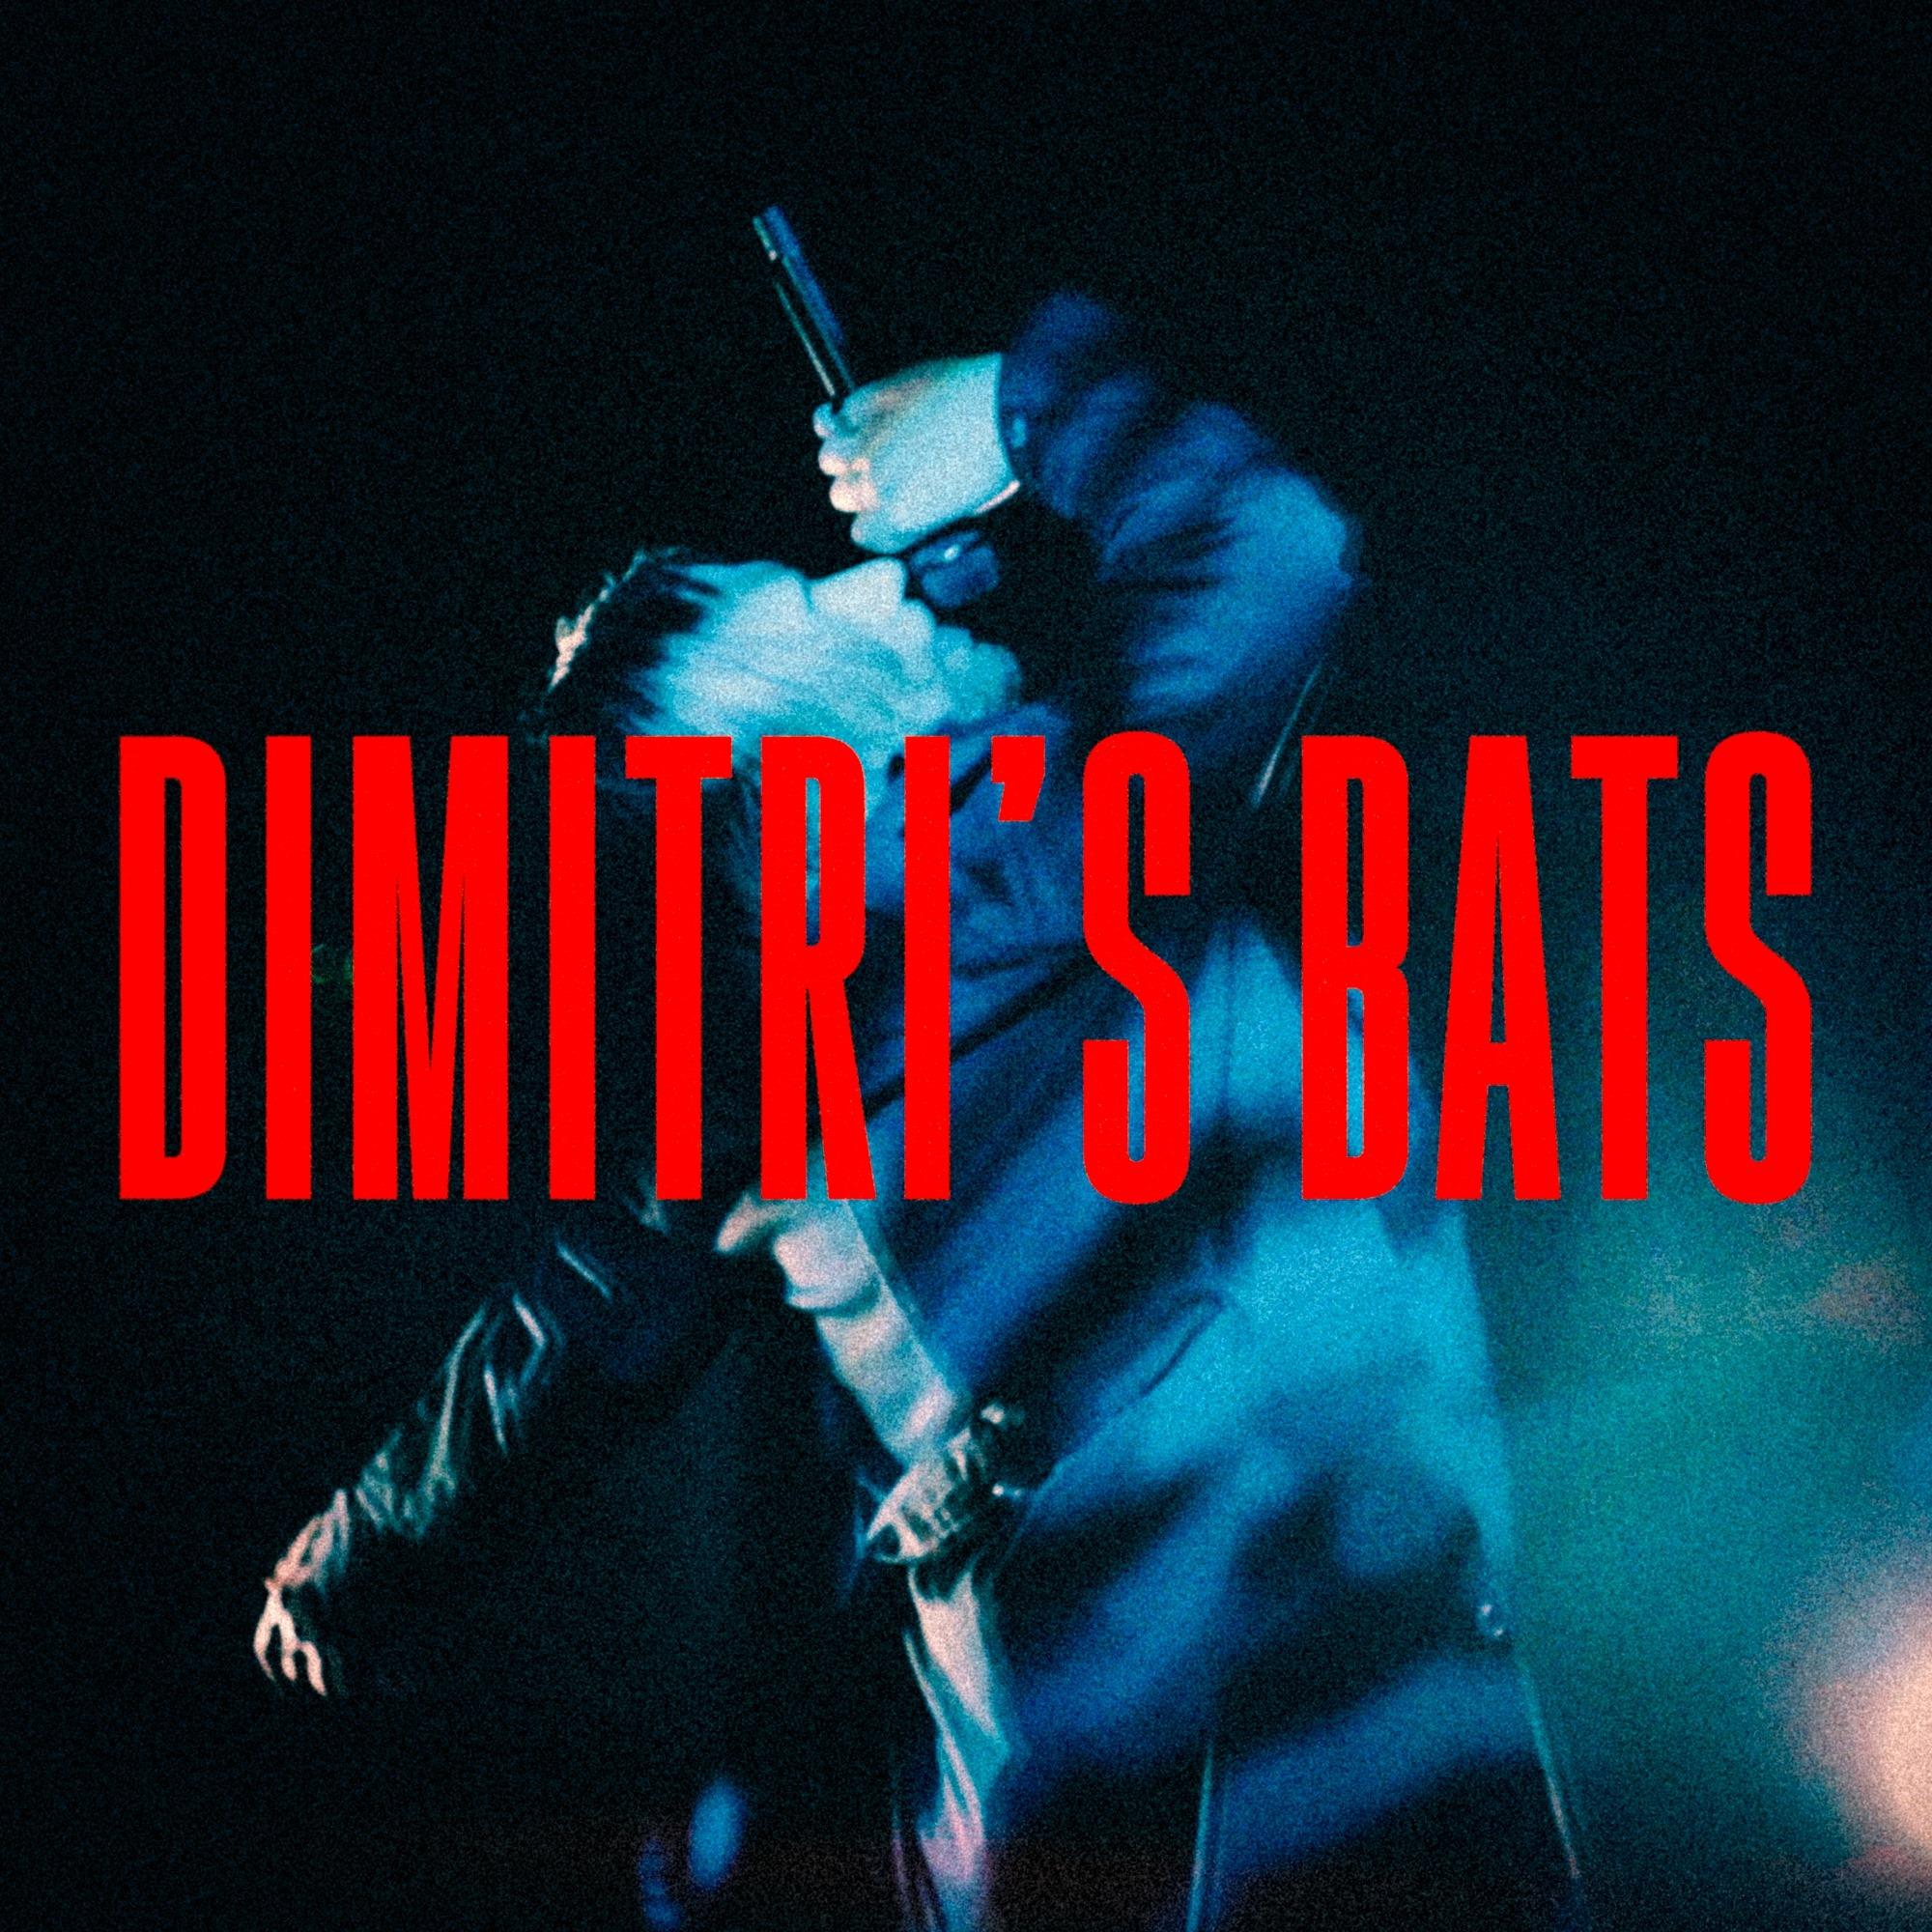 Dimitri's Bats